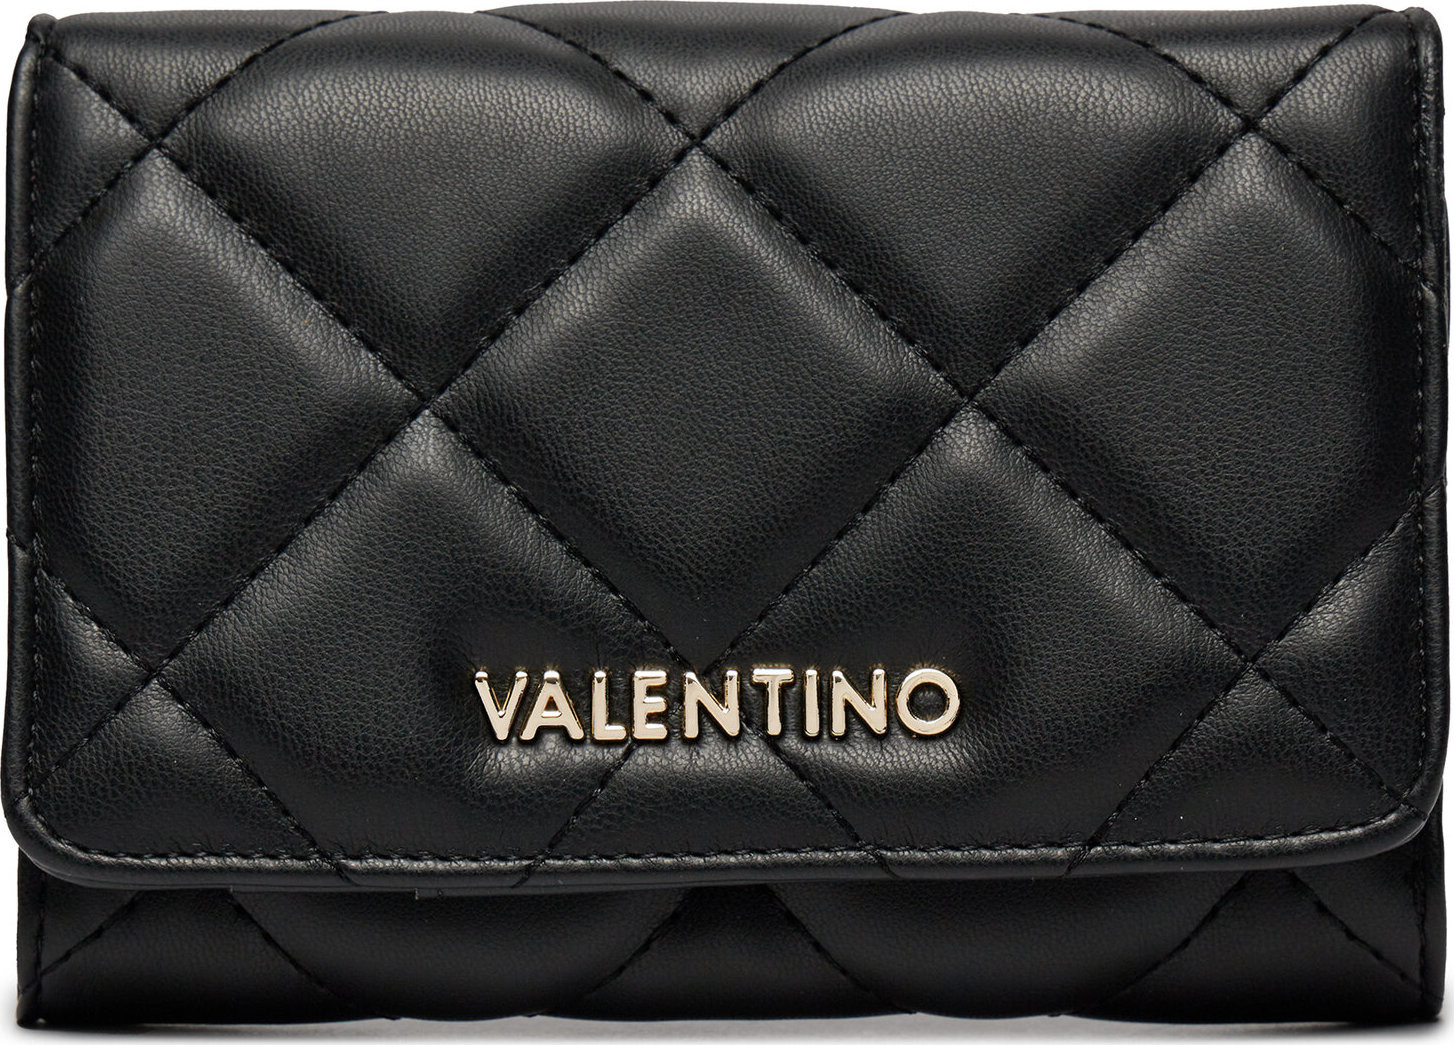 Velká dámská peněženka Valentino Ocarina VPS3KK43R Nero 001